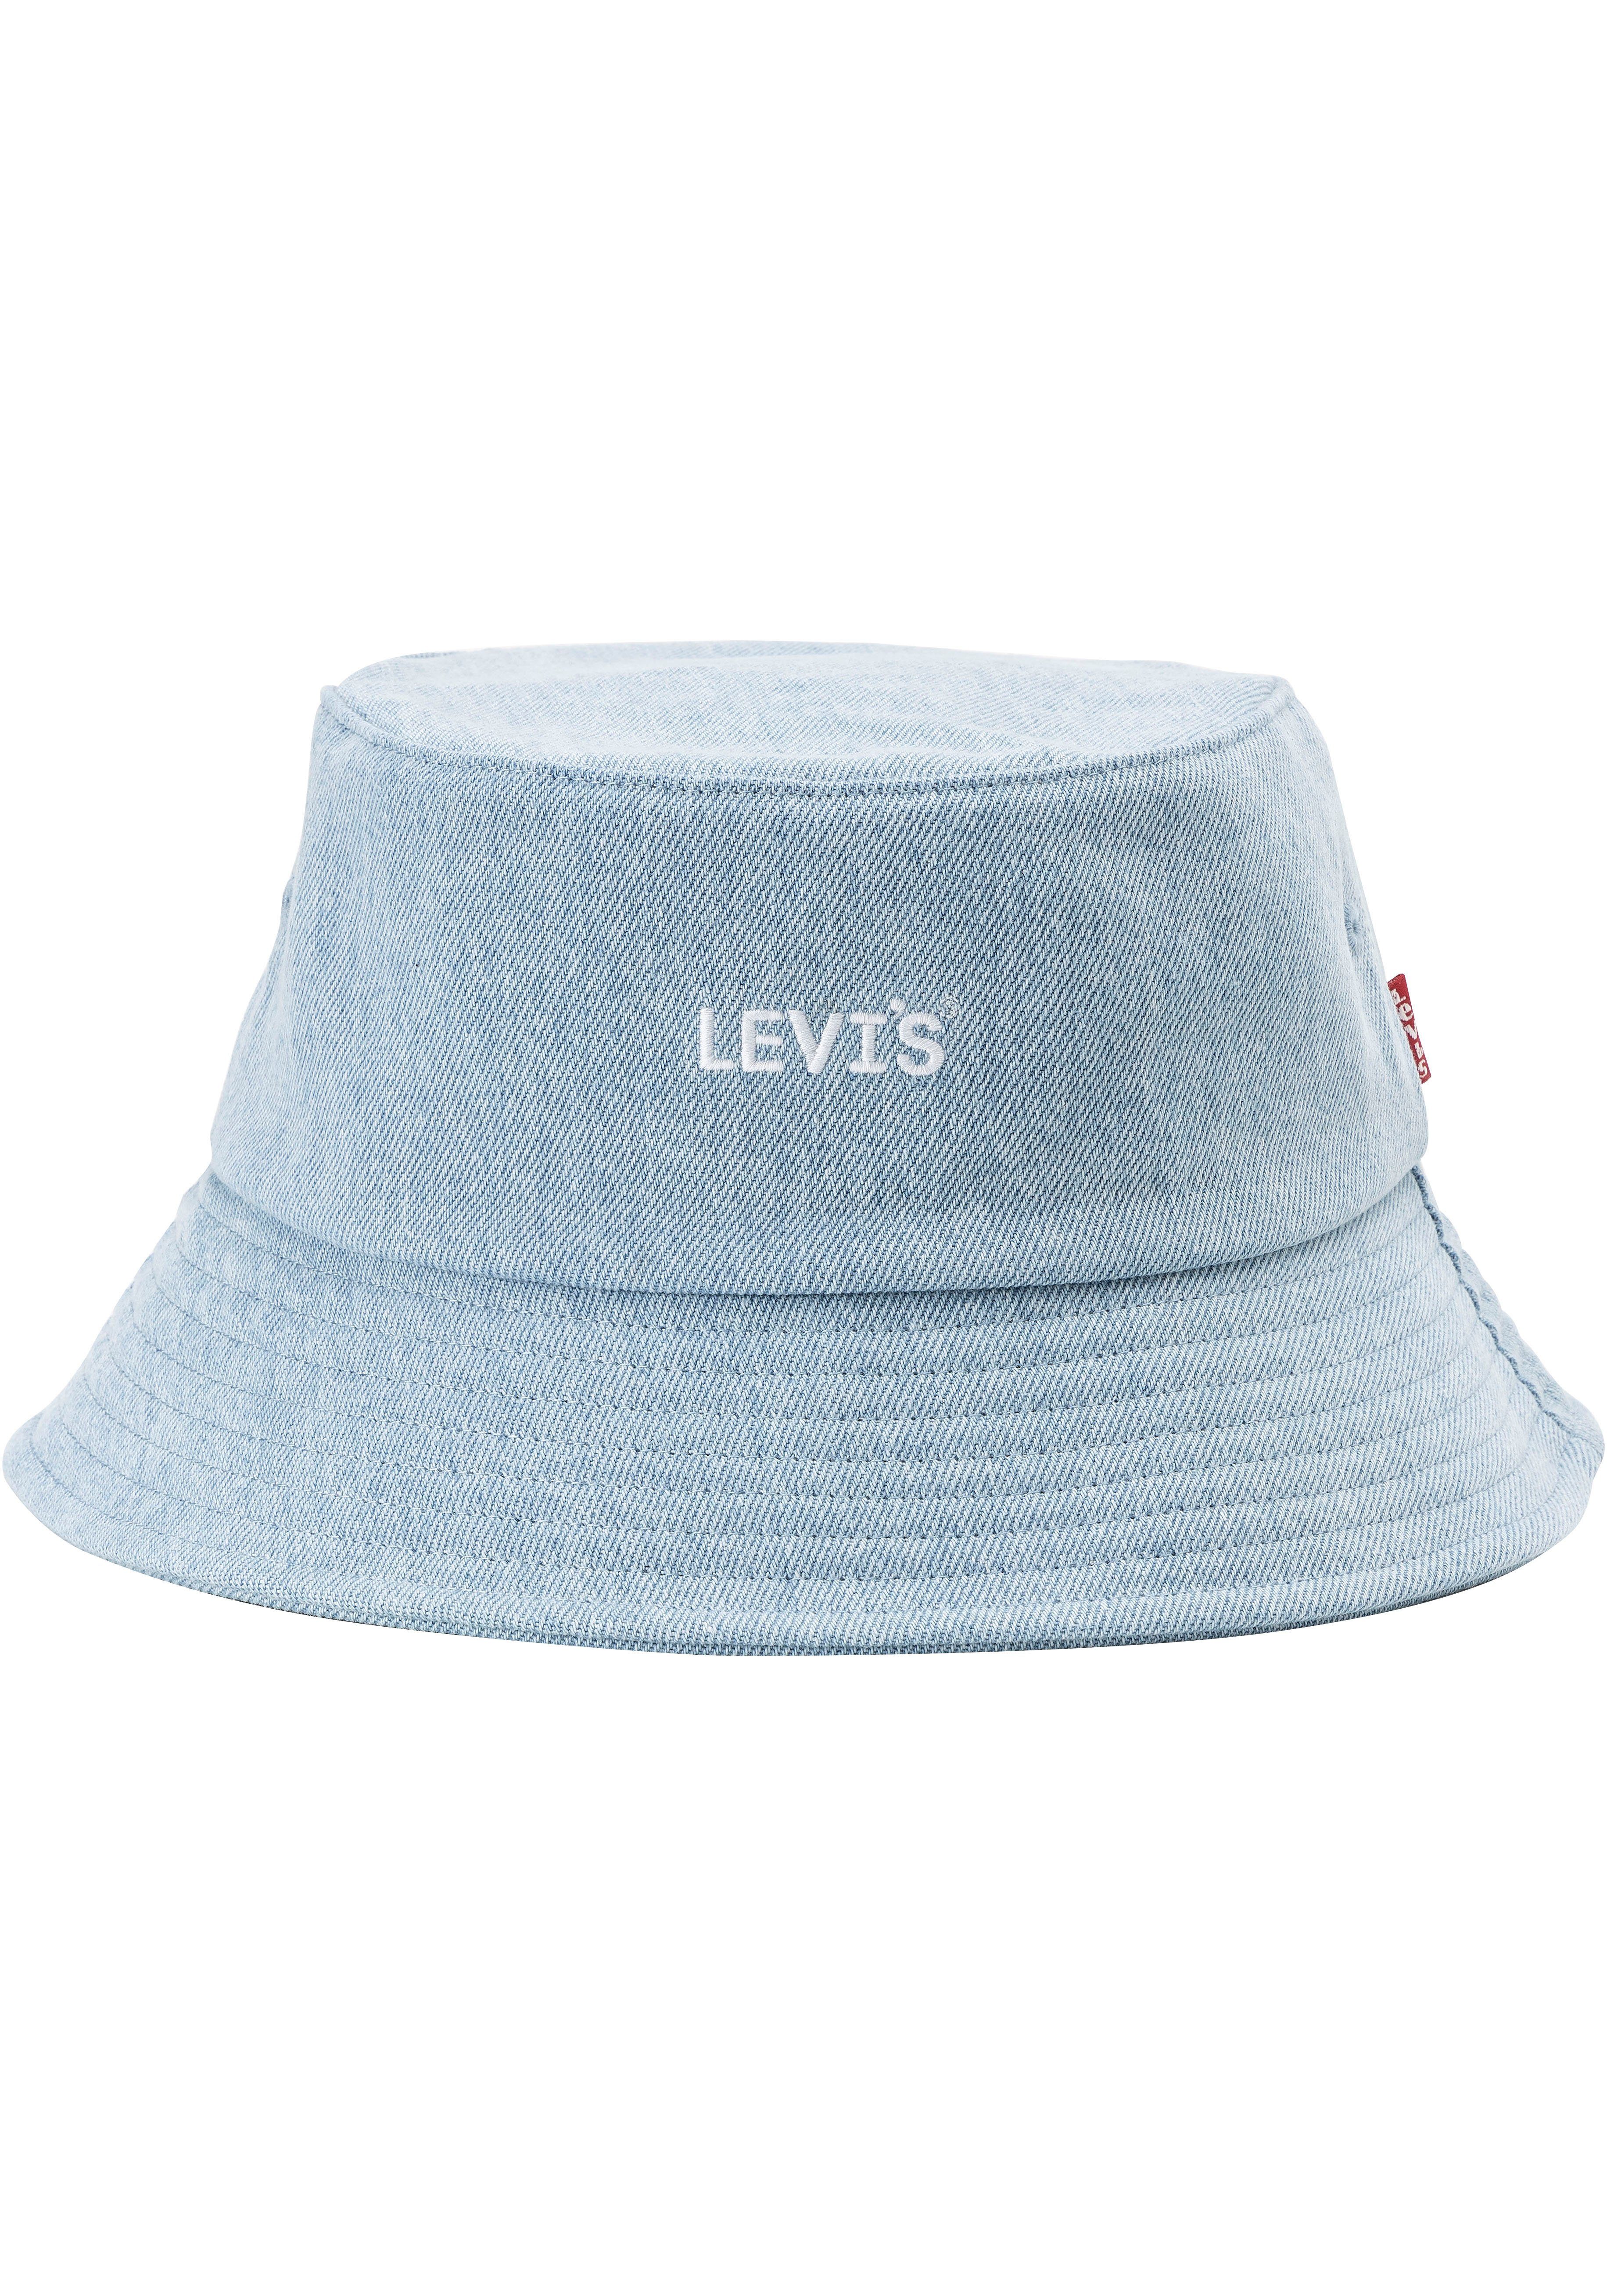 Levi's denim bucket hat lichtblauw